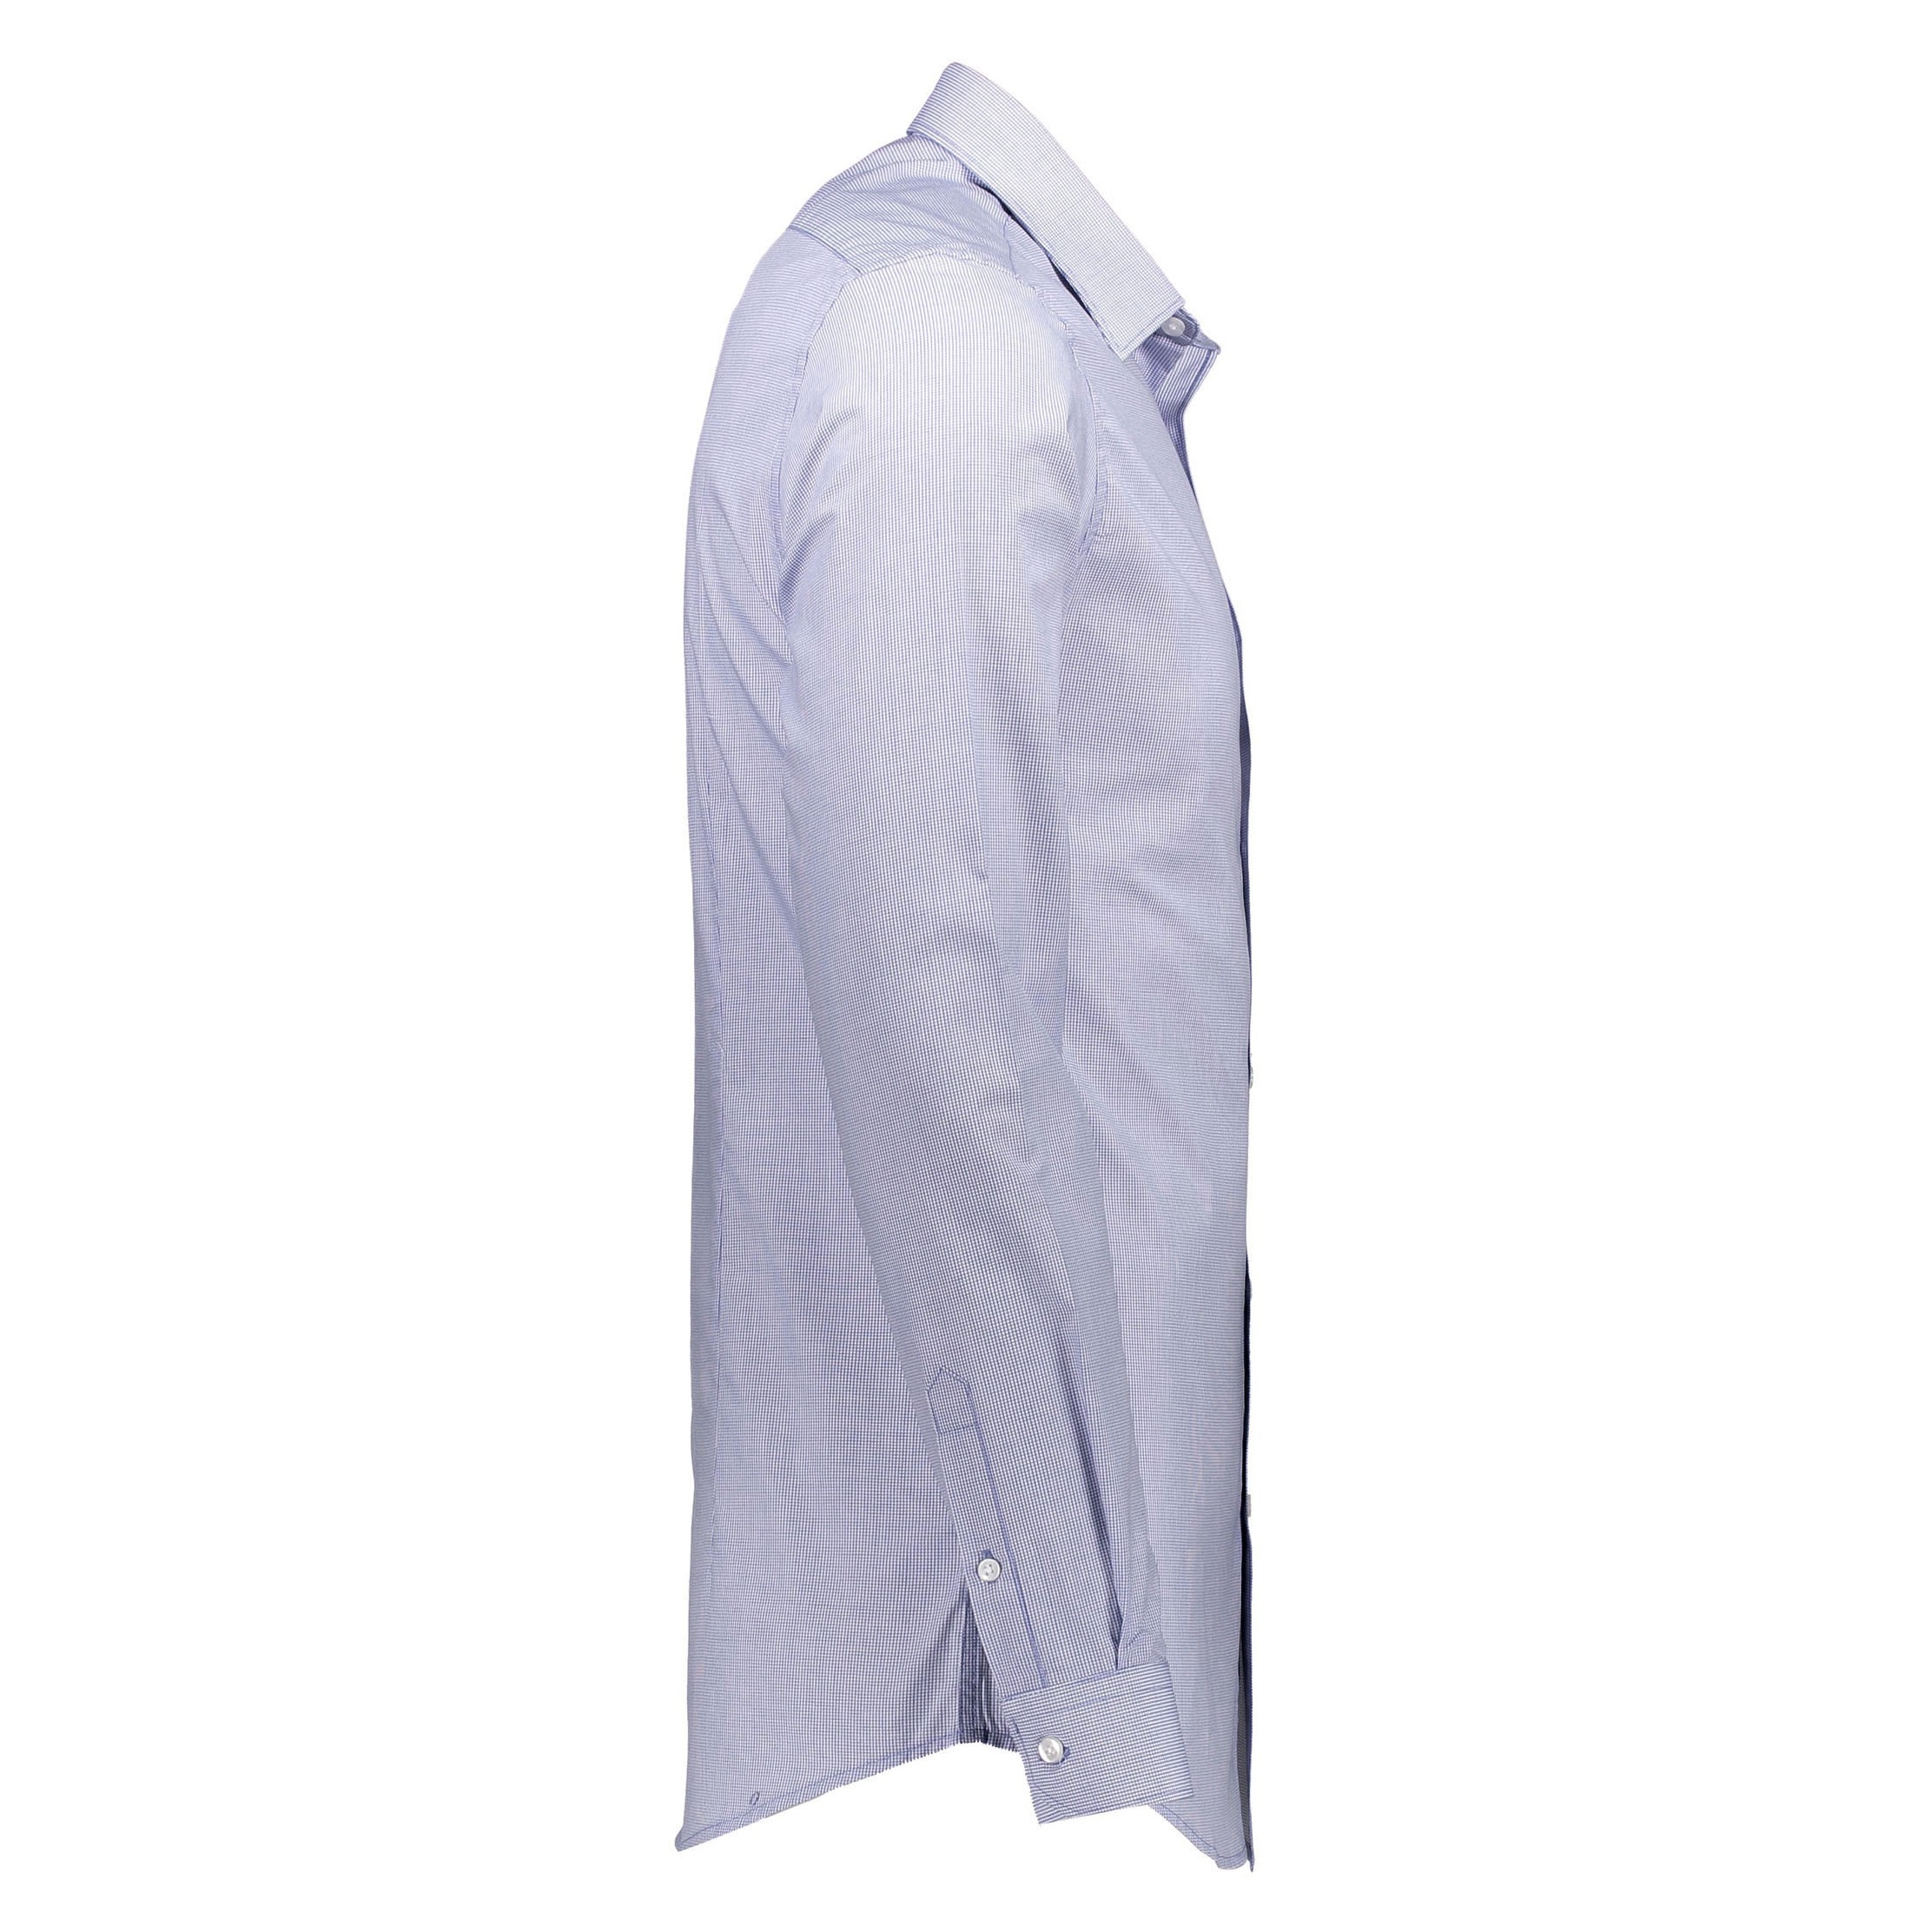 پیراهن رسمی مردانه - رد هرینگ - آبي روشن - 5